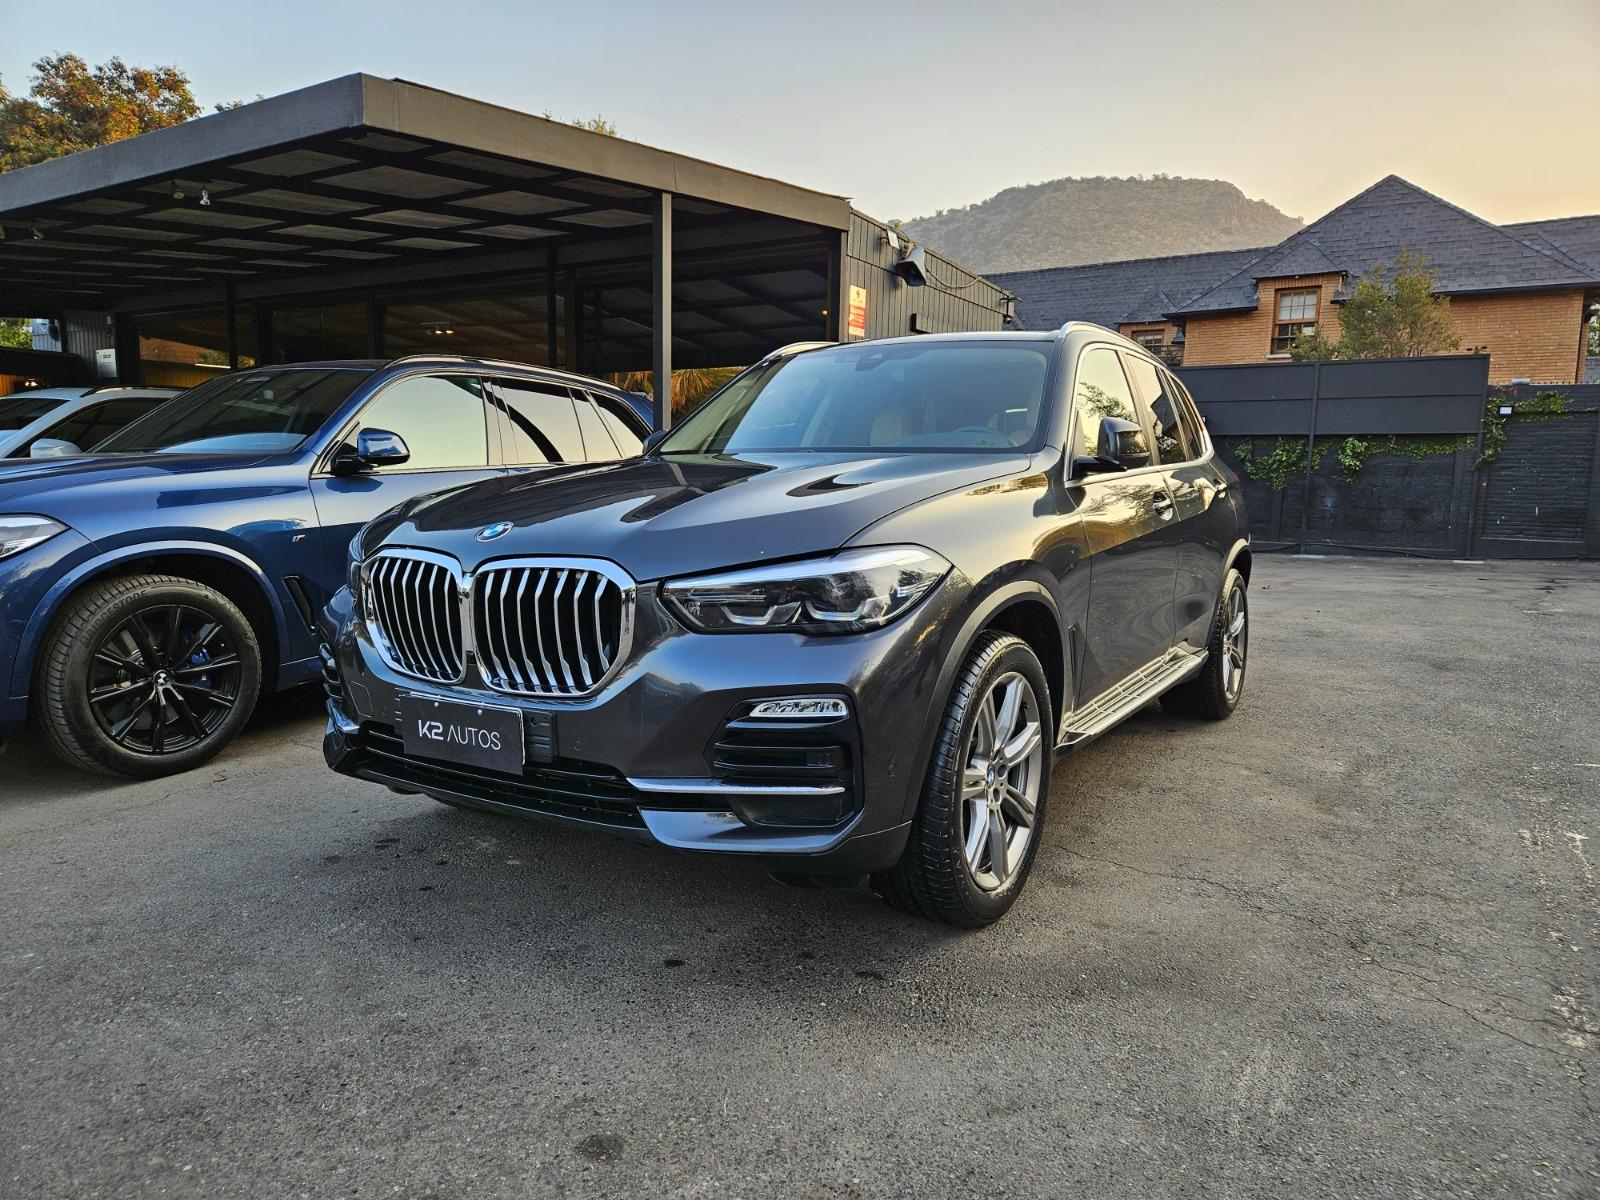 BMW X5 XDRIVE 40i EXECUTIVE  2020 COMO NUEVO, POCO KM - K2 AUTOS